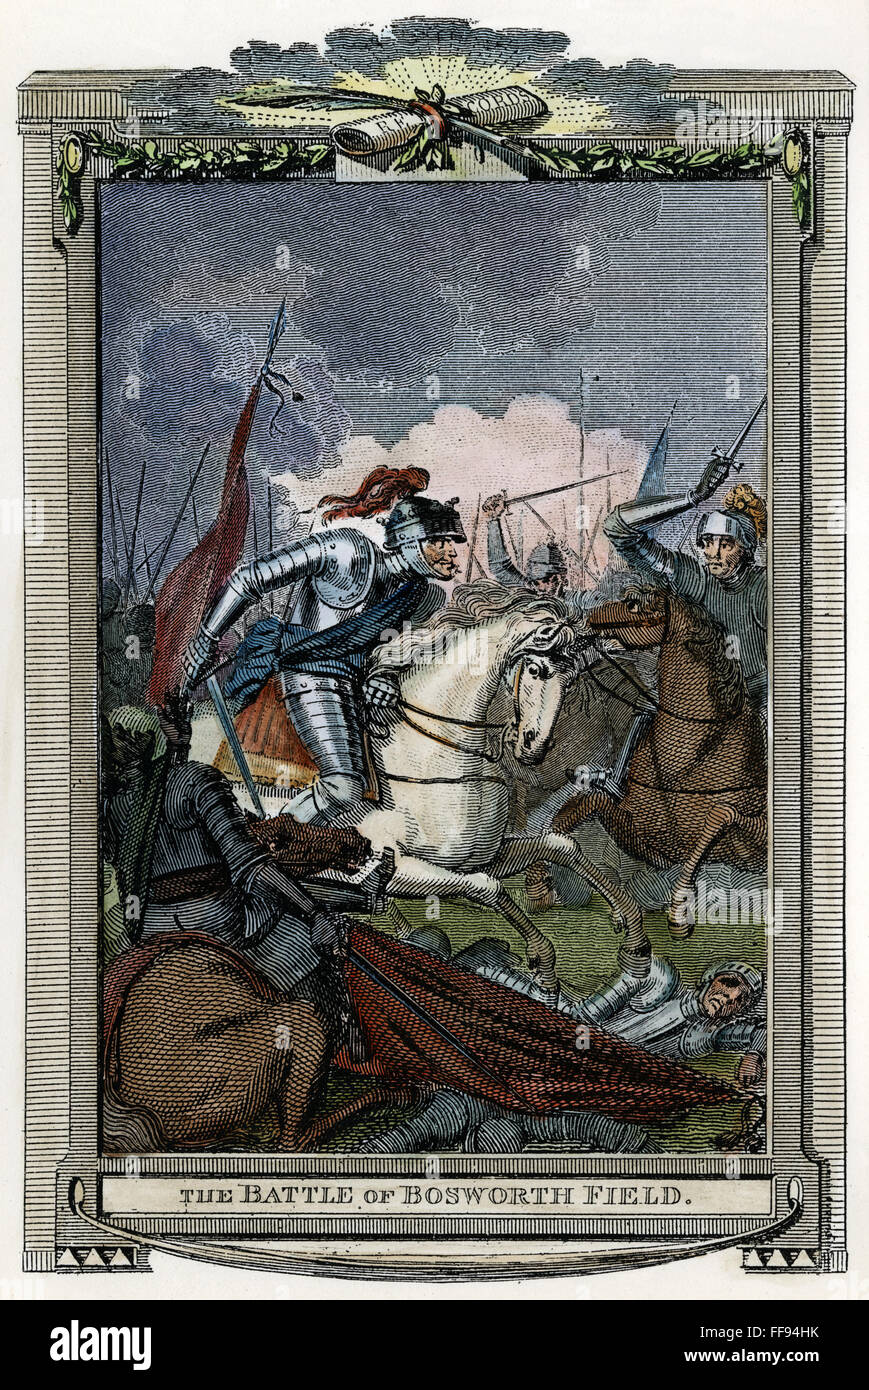 Enrico VII (1457-1509). /NKing di Inghilterra, 1485-1509. Henry (centro, sul cavallo bianco) nella battaglia di Bosworth Field, 22 agosto 1485. Incisione su rame, inglese del XVIII secolo. Foto Stock